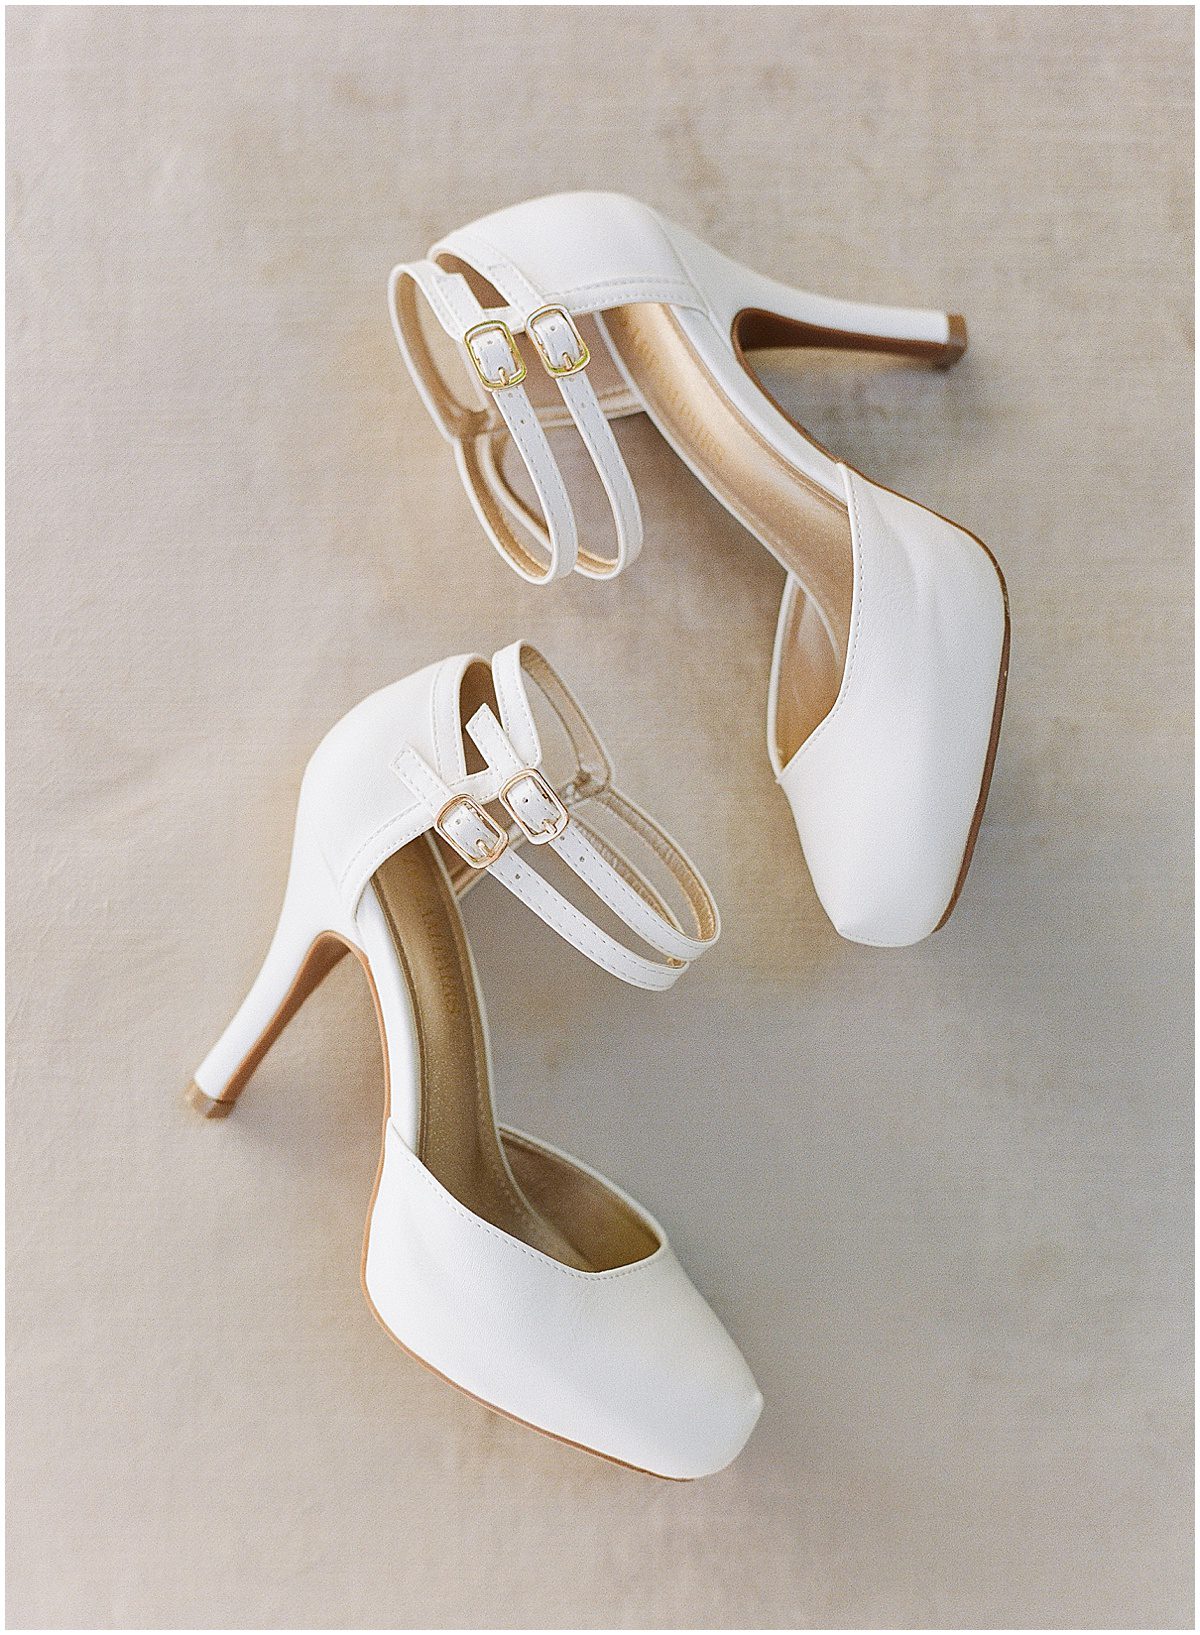 Brides Shoes Photo